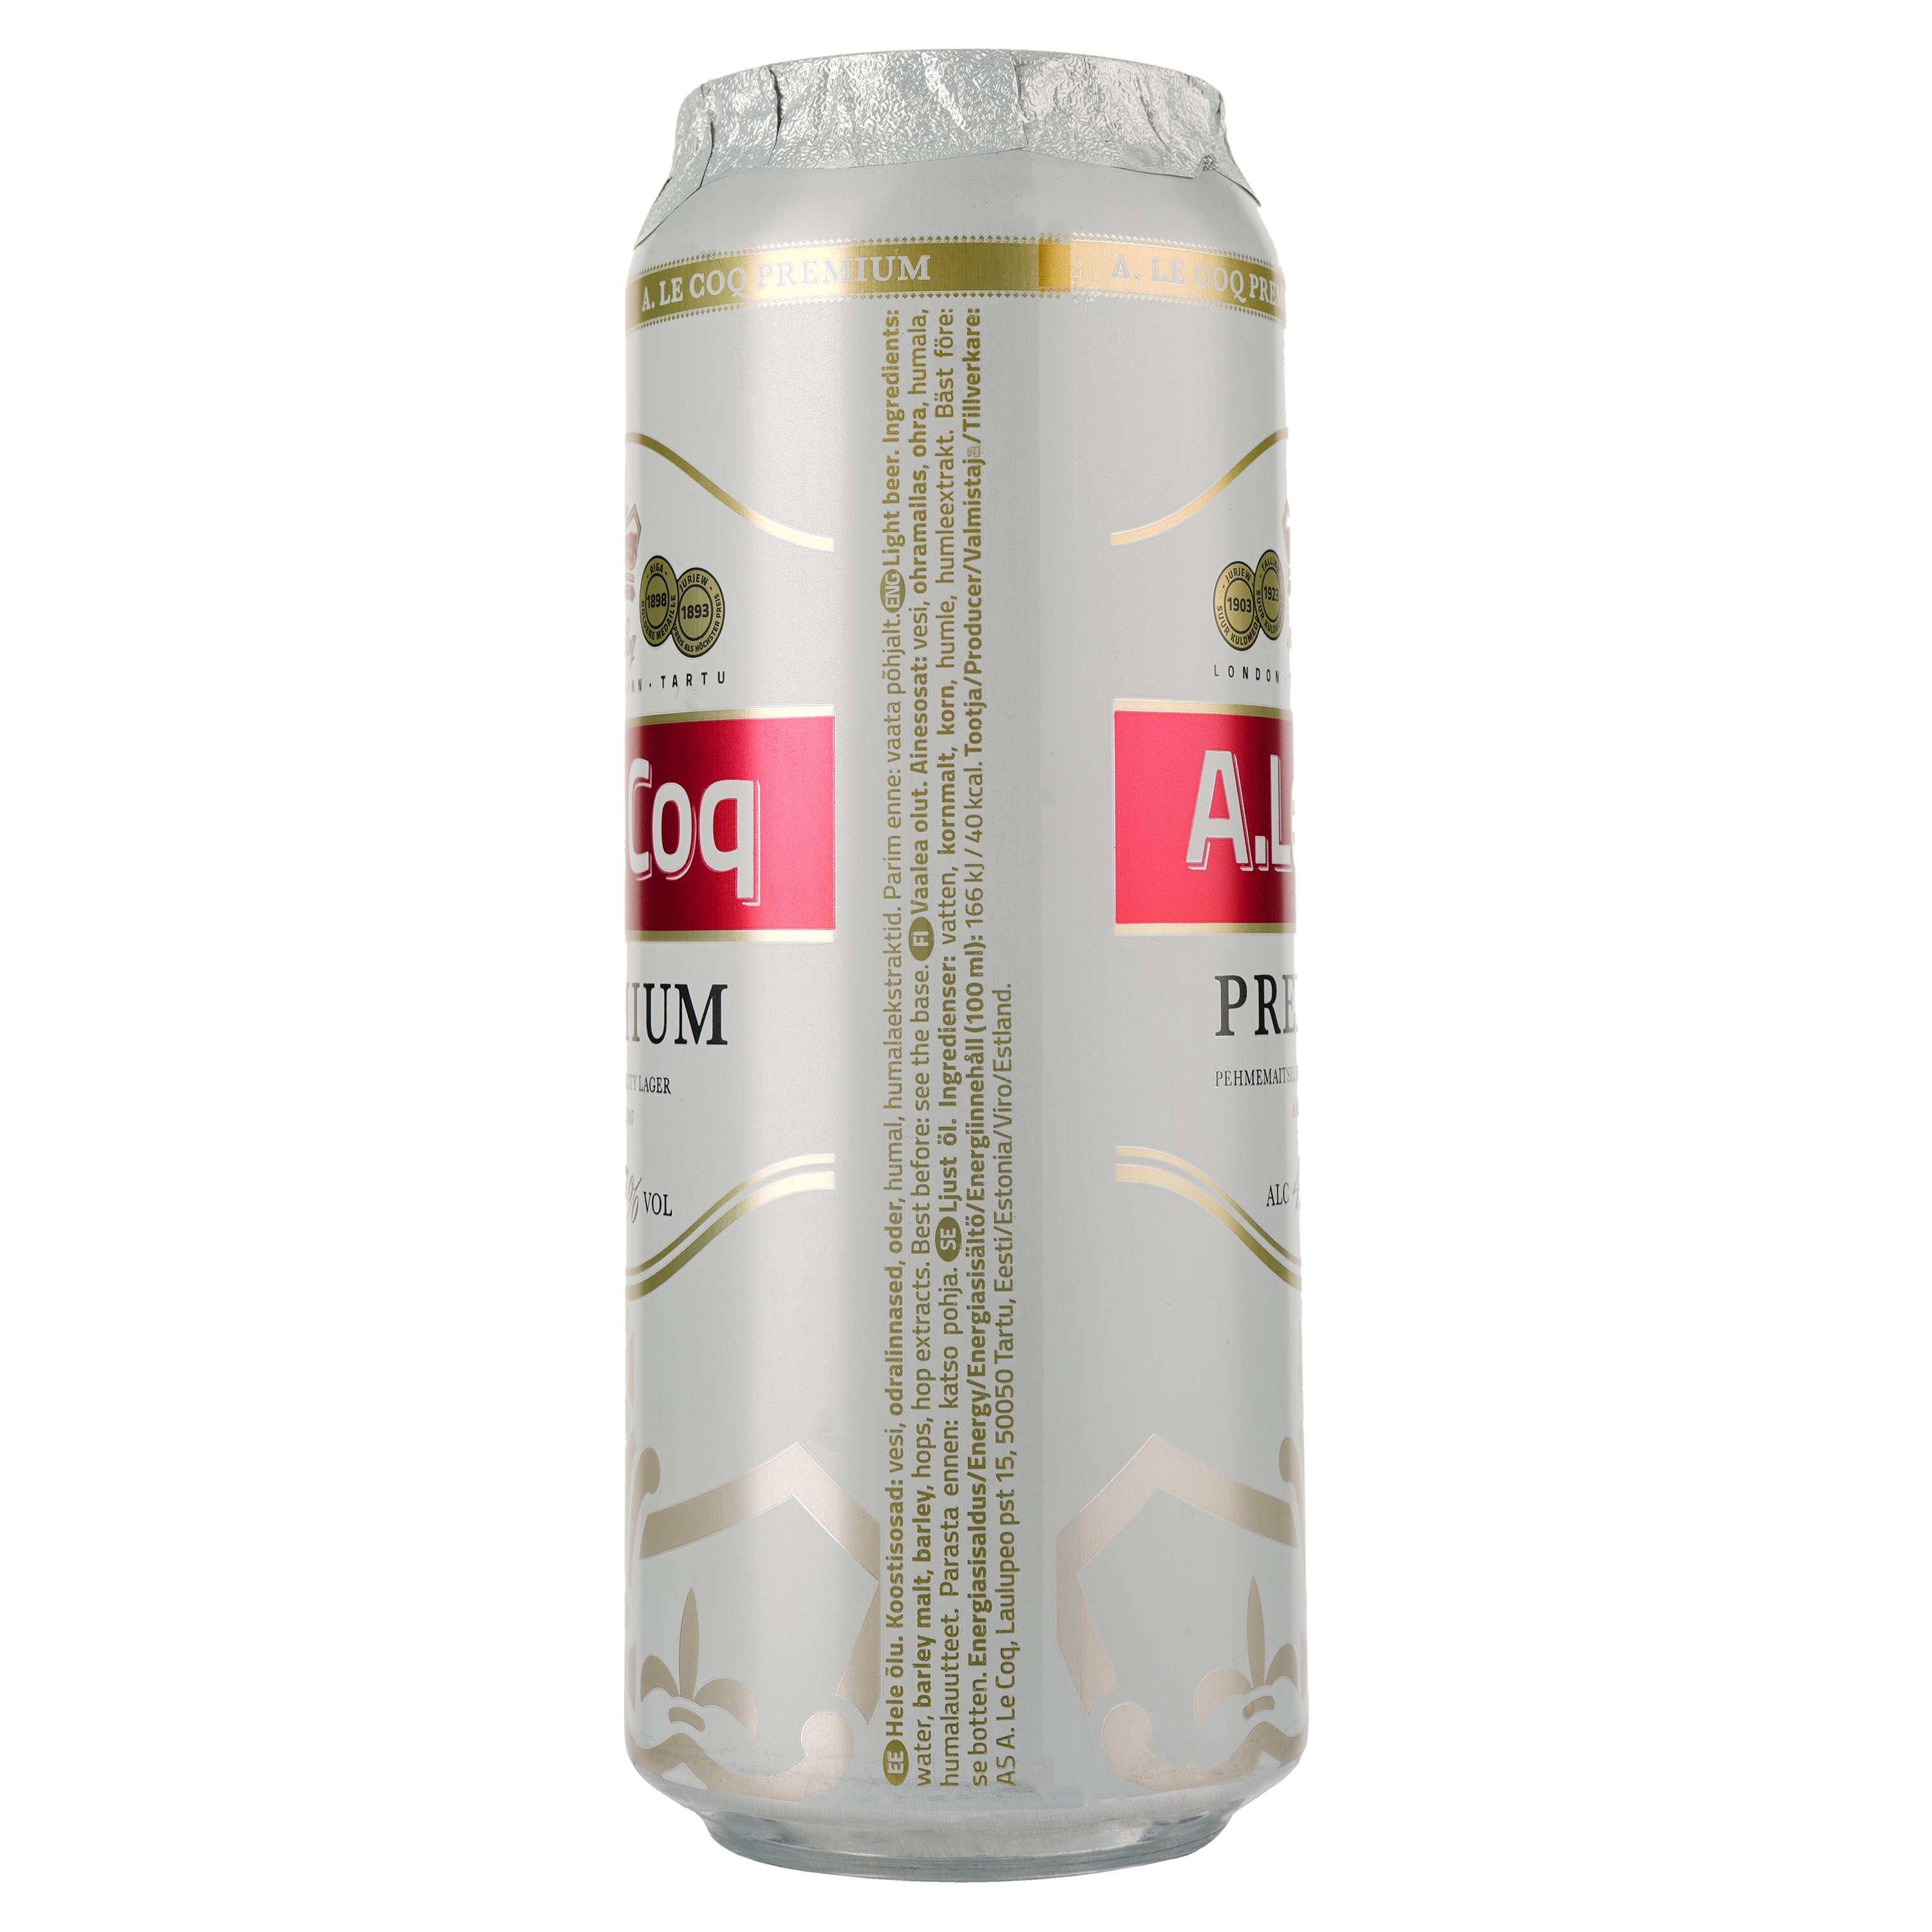 Пиво A. Le Coq Premium, світле, фільтроване, 4,7%, з/б, 0,5 л - фото 2